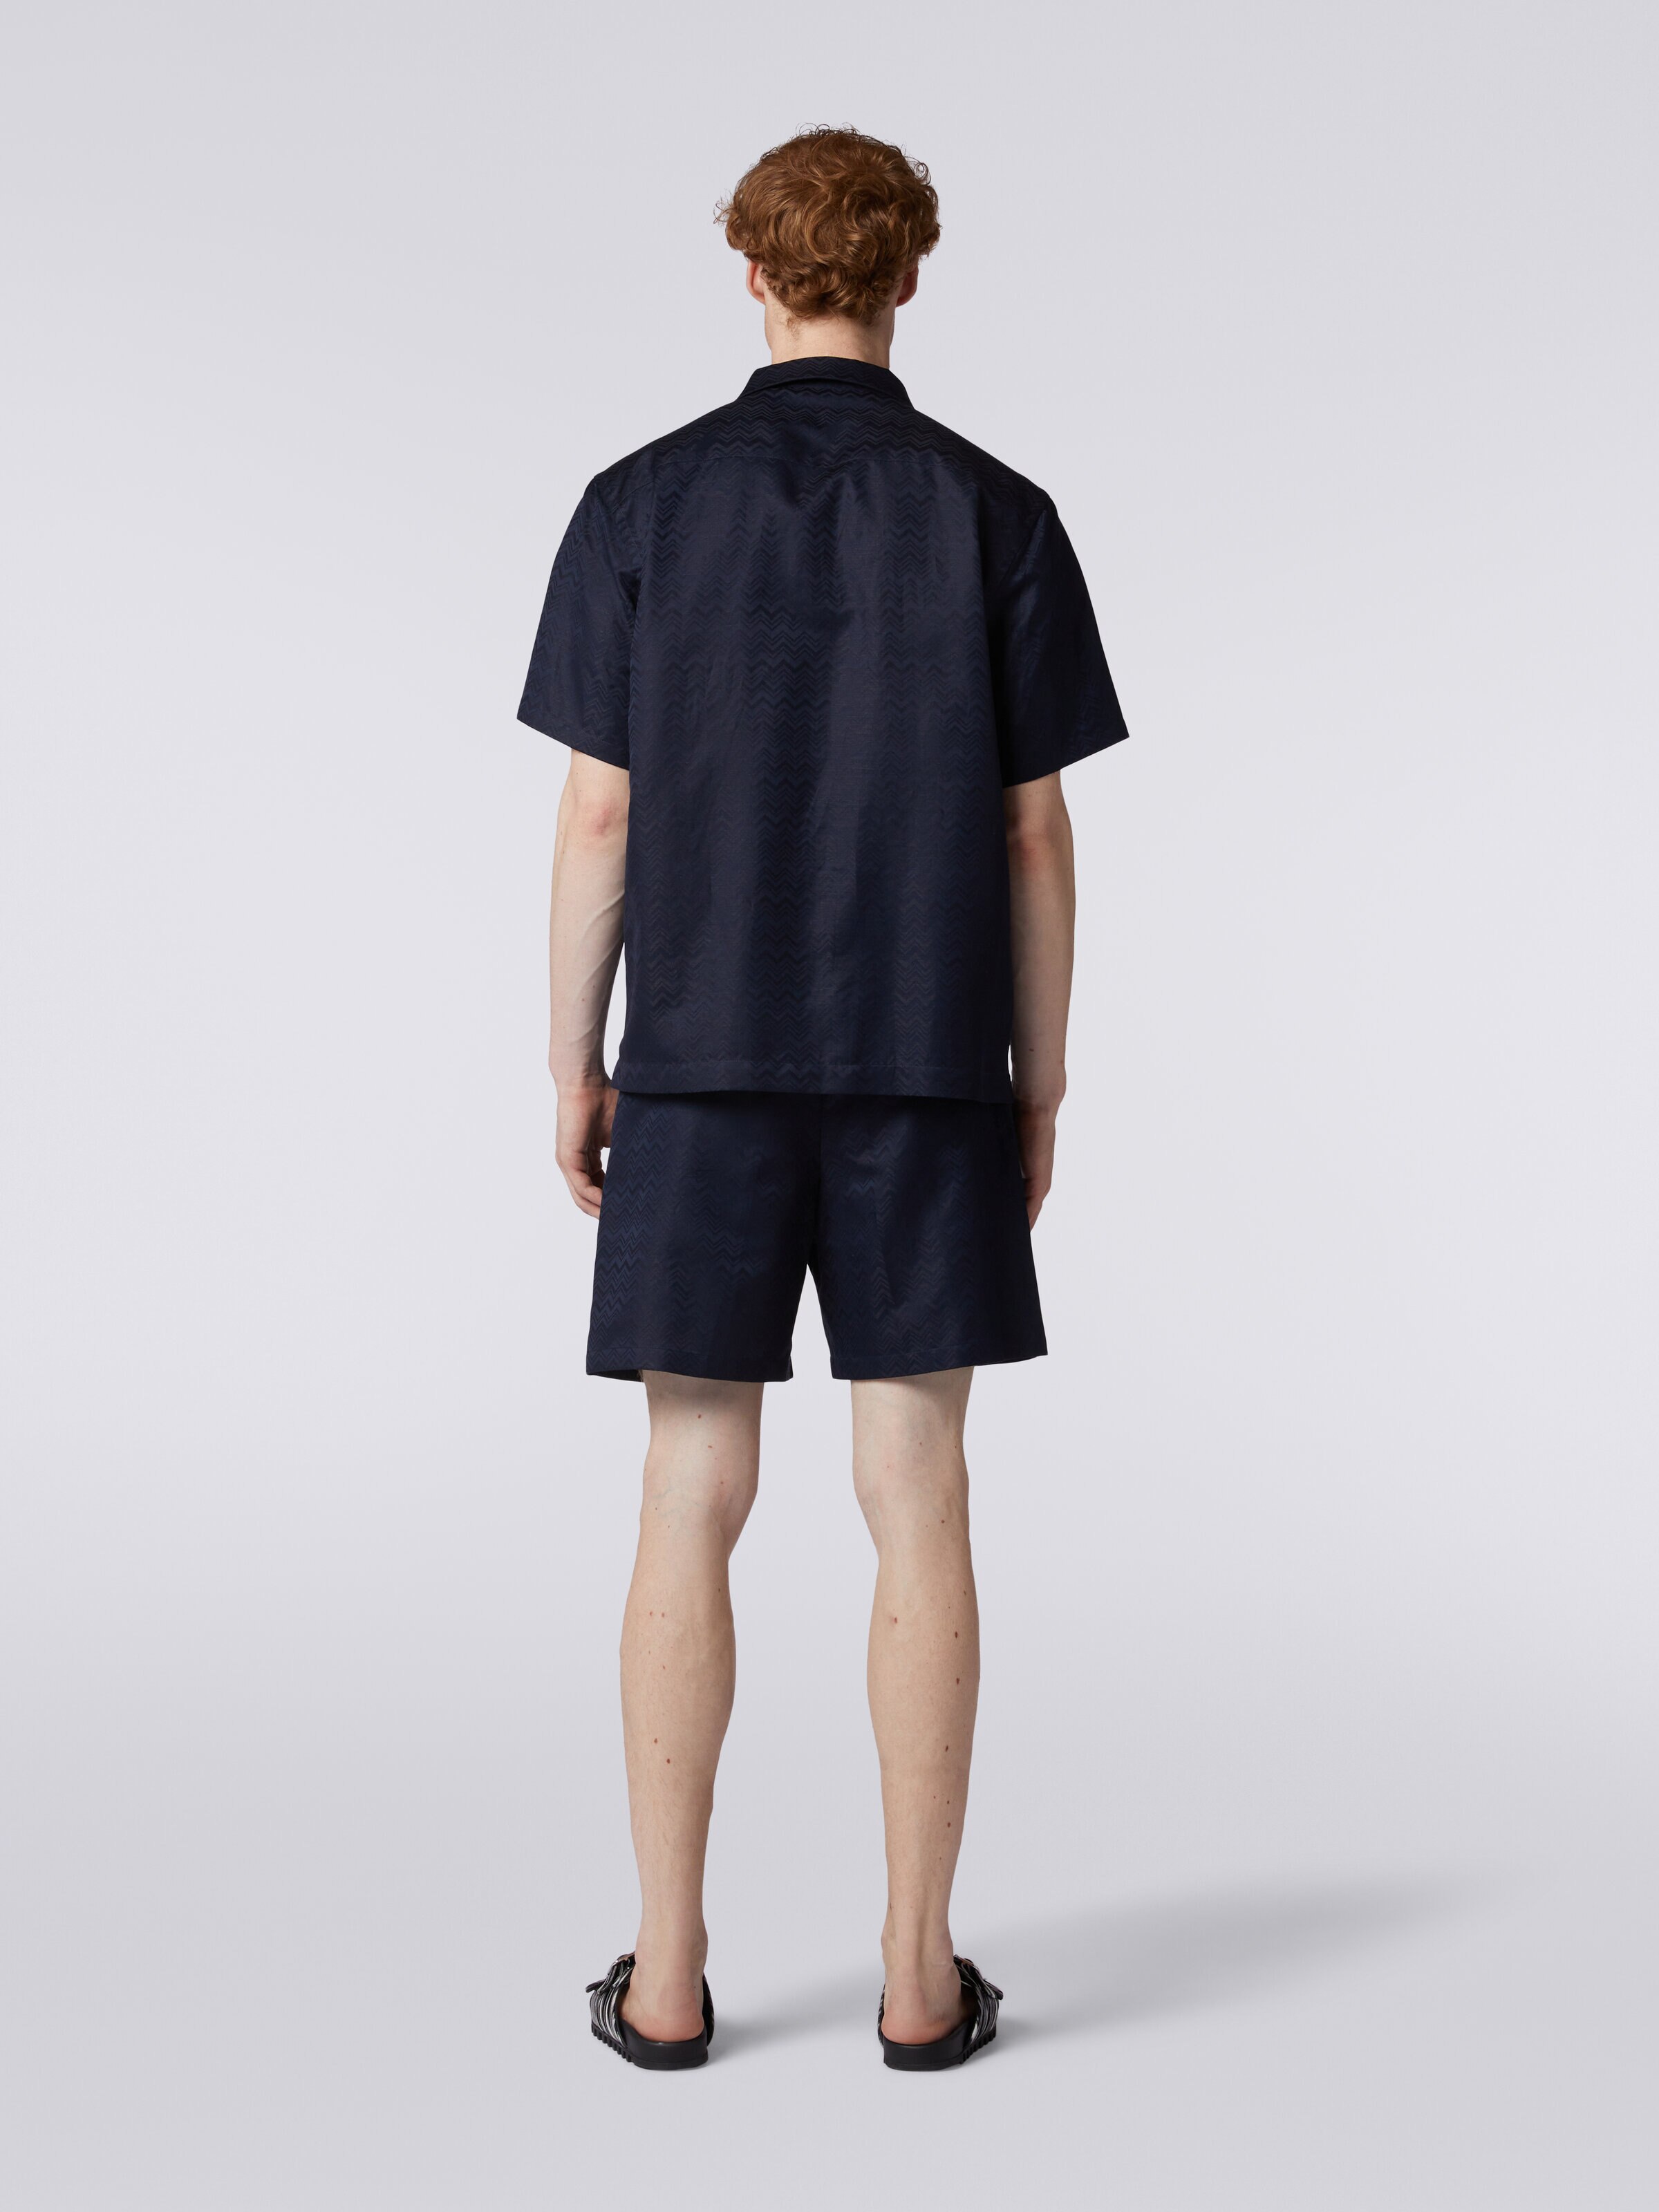 Bermuda shorts in cotton blend with zigzag pattern, Dark Blue - 3